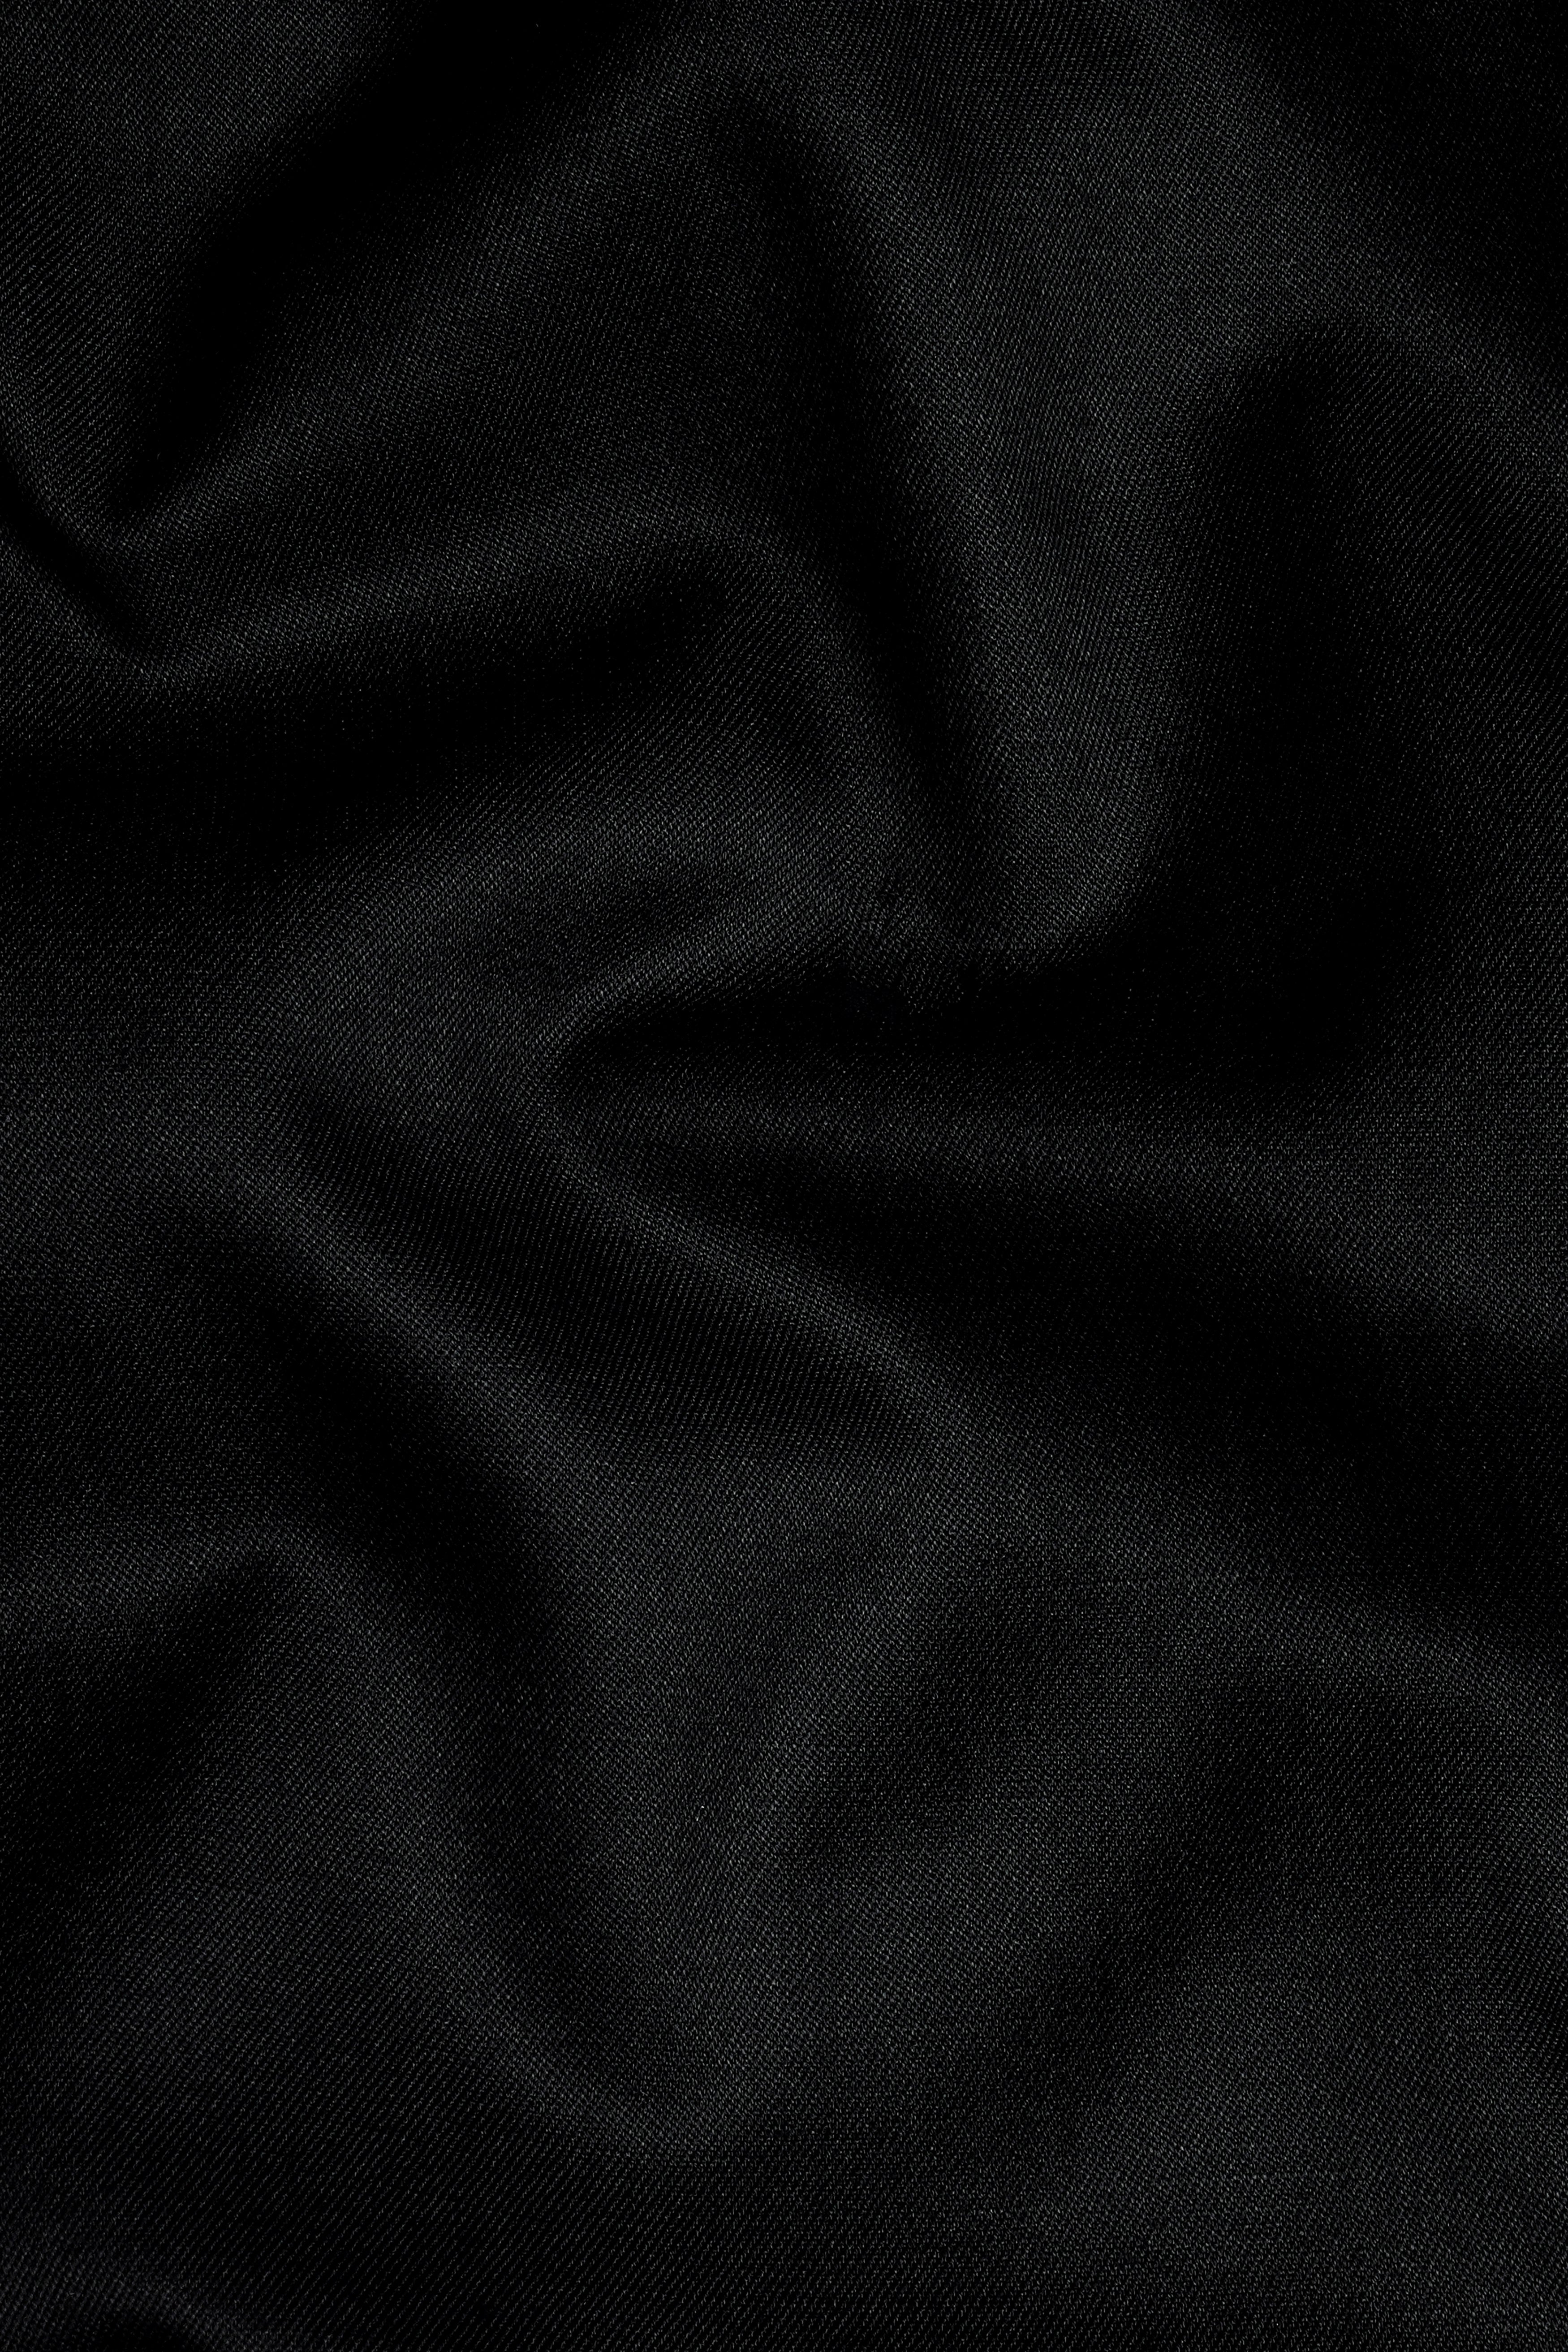 Jade Black Wool Rich Waistcoat V3052-36, V3052-38, V3052-40, V3052-42, V3052-44, V3052-46, V3052-48, V3052-50, V3052-52, V3052-54, V3052-56, V3052-58, V3052-60